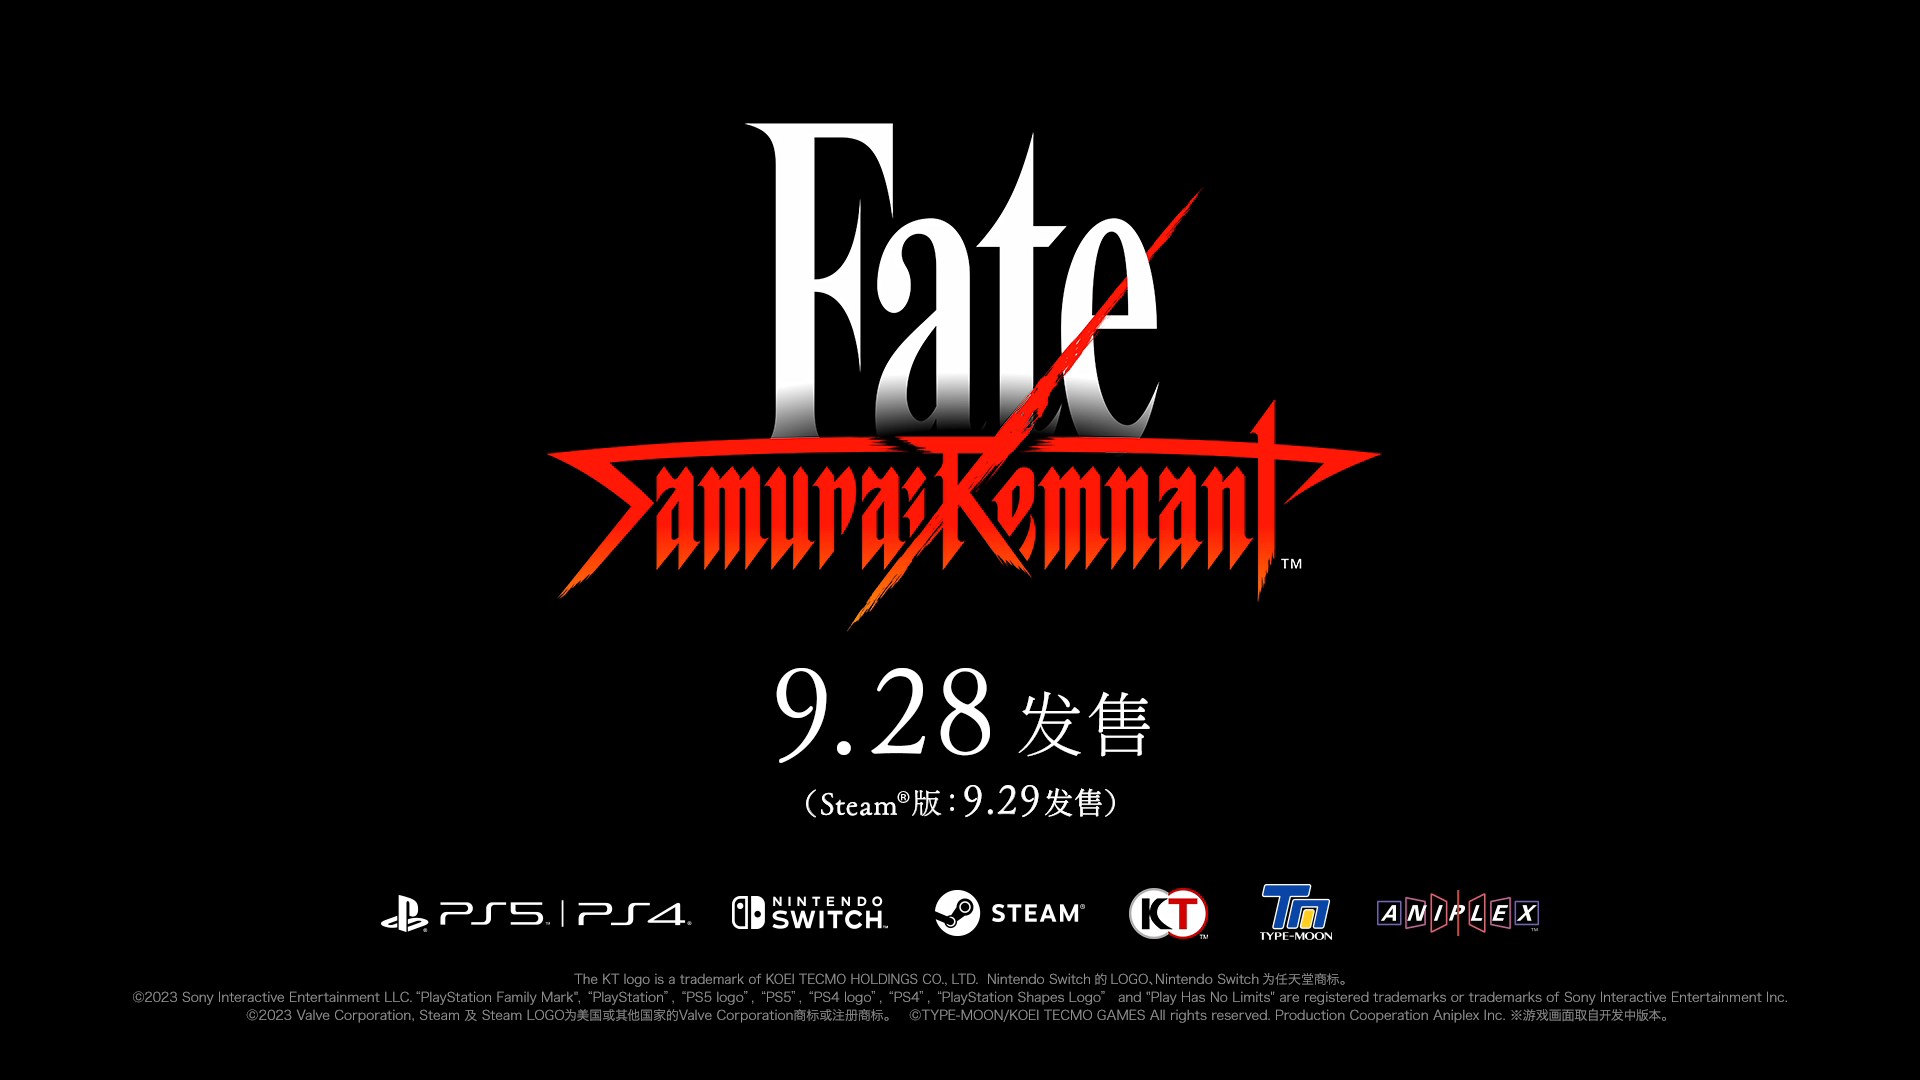 高能电玩节：《Fate/Samurai